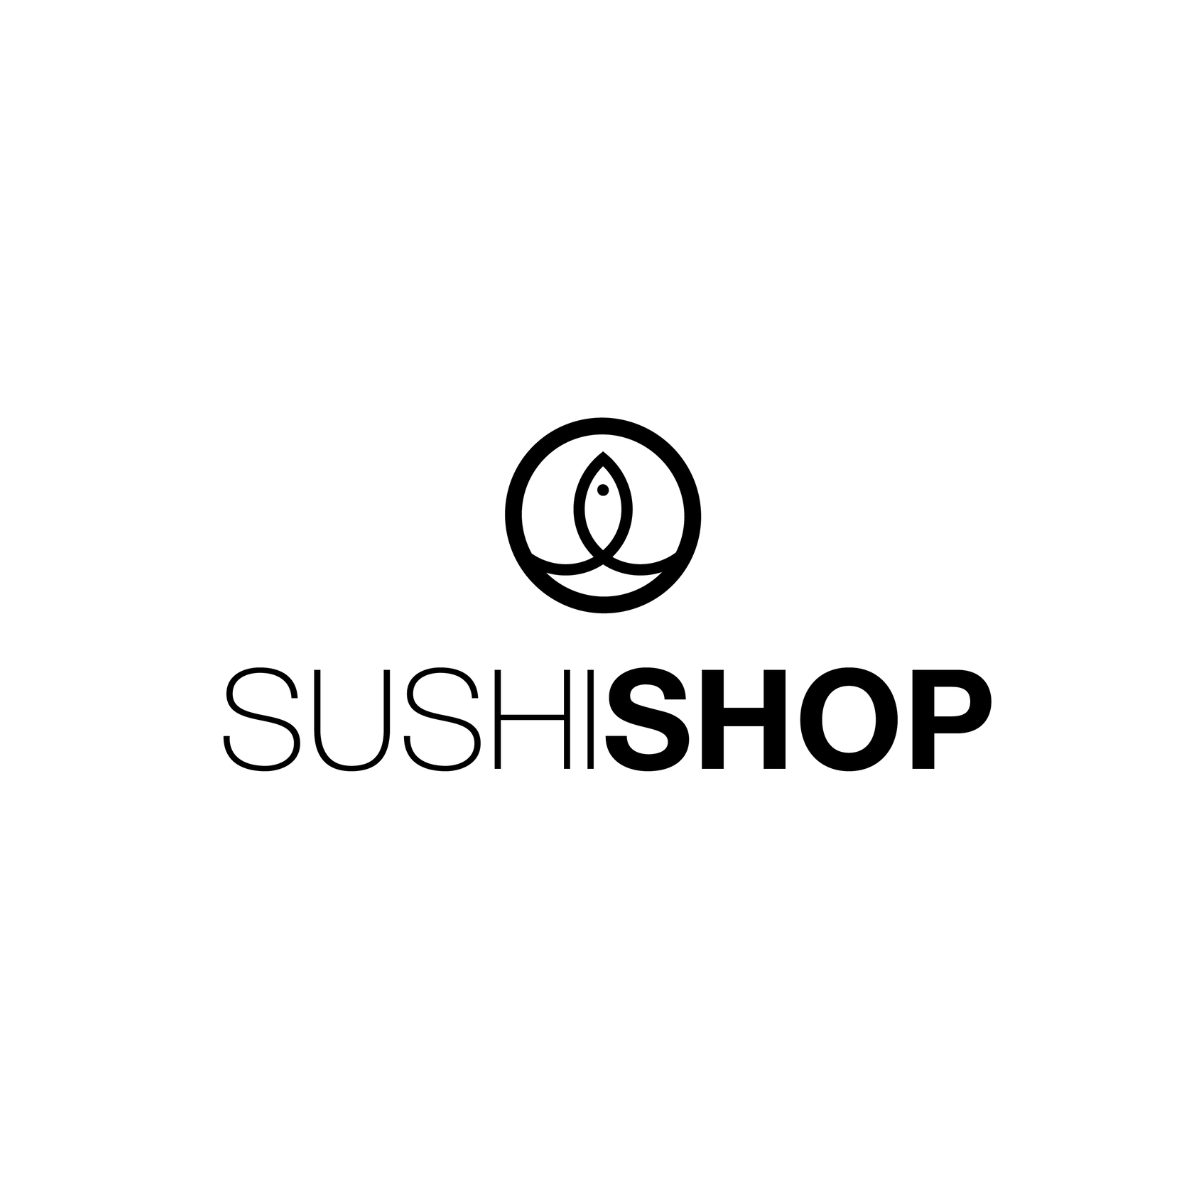 Le logo de Sushi Shop est affiché ici pour mettre en avant son partenariat avec mavisitemedicale.fr, marque d'AKTISEA, dans la gestion des visites médicales des collaborateurs. Chez AKTISEA, entreprise adaptée, nous sommes engagés pour plus d'inclusion.